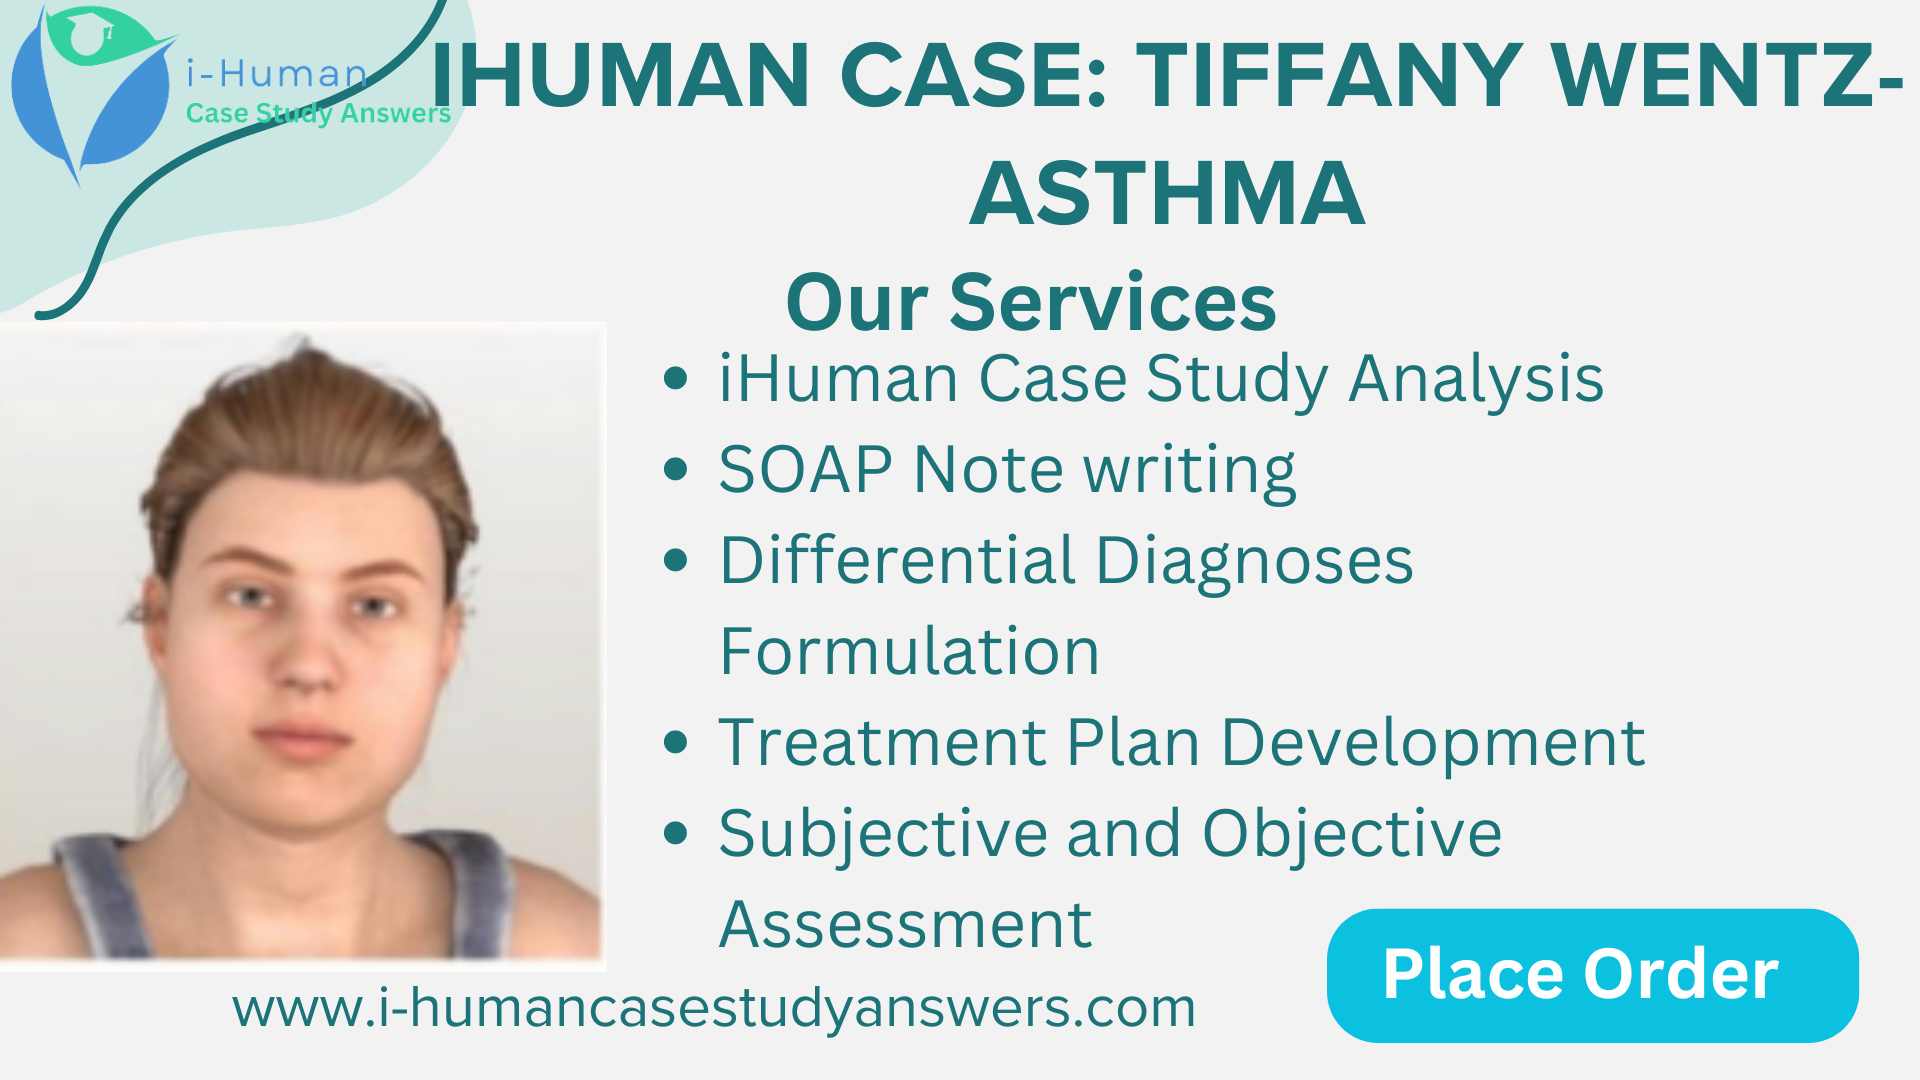 iHuman case Tiffany Wentz- asthma